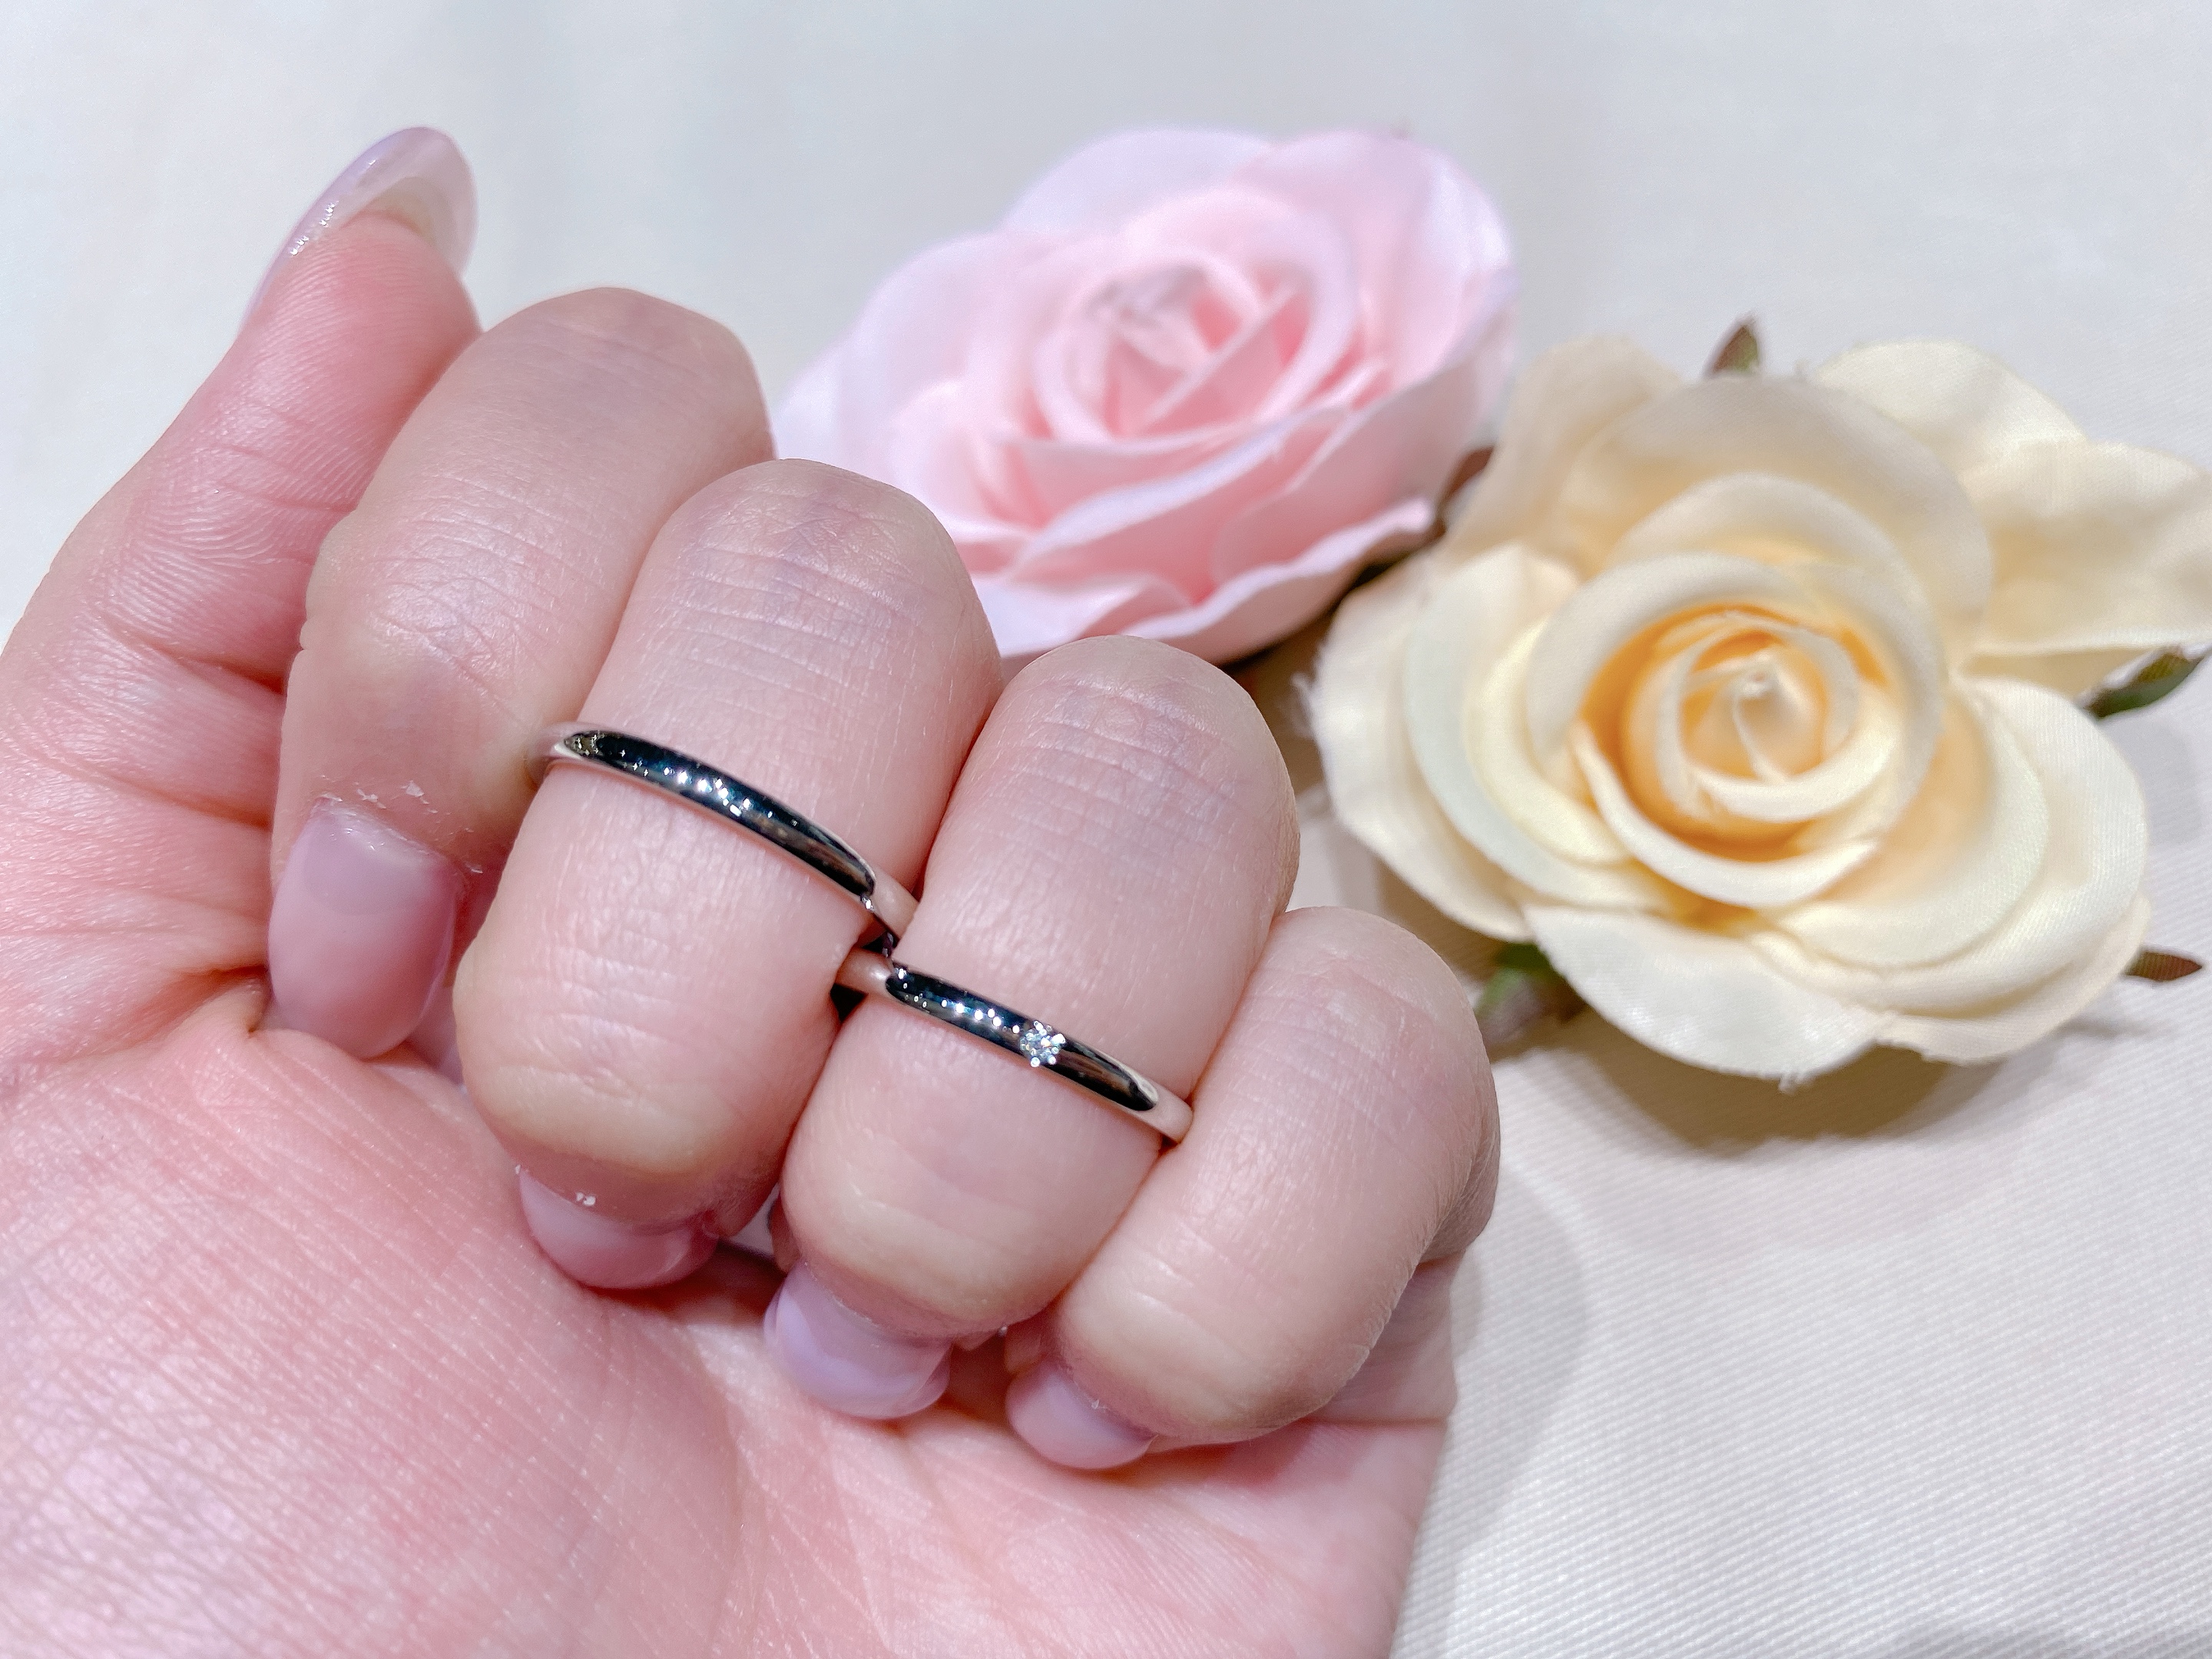 福井市ベル低予算で買える結婚指輪プチマリエ